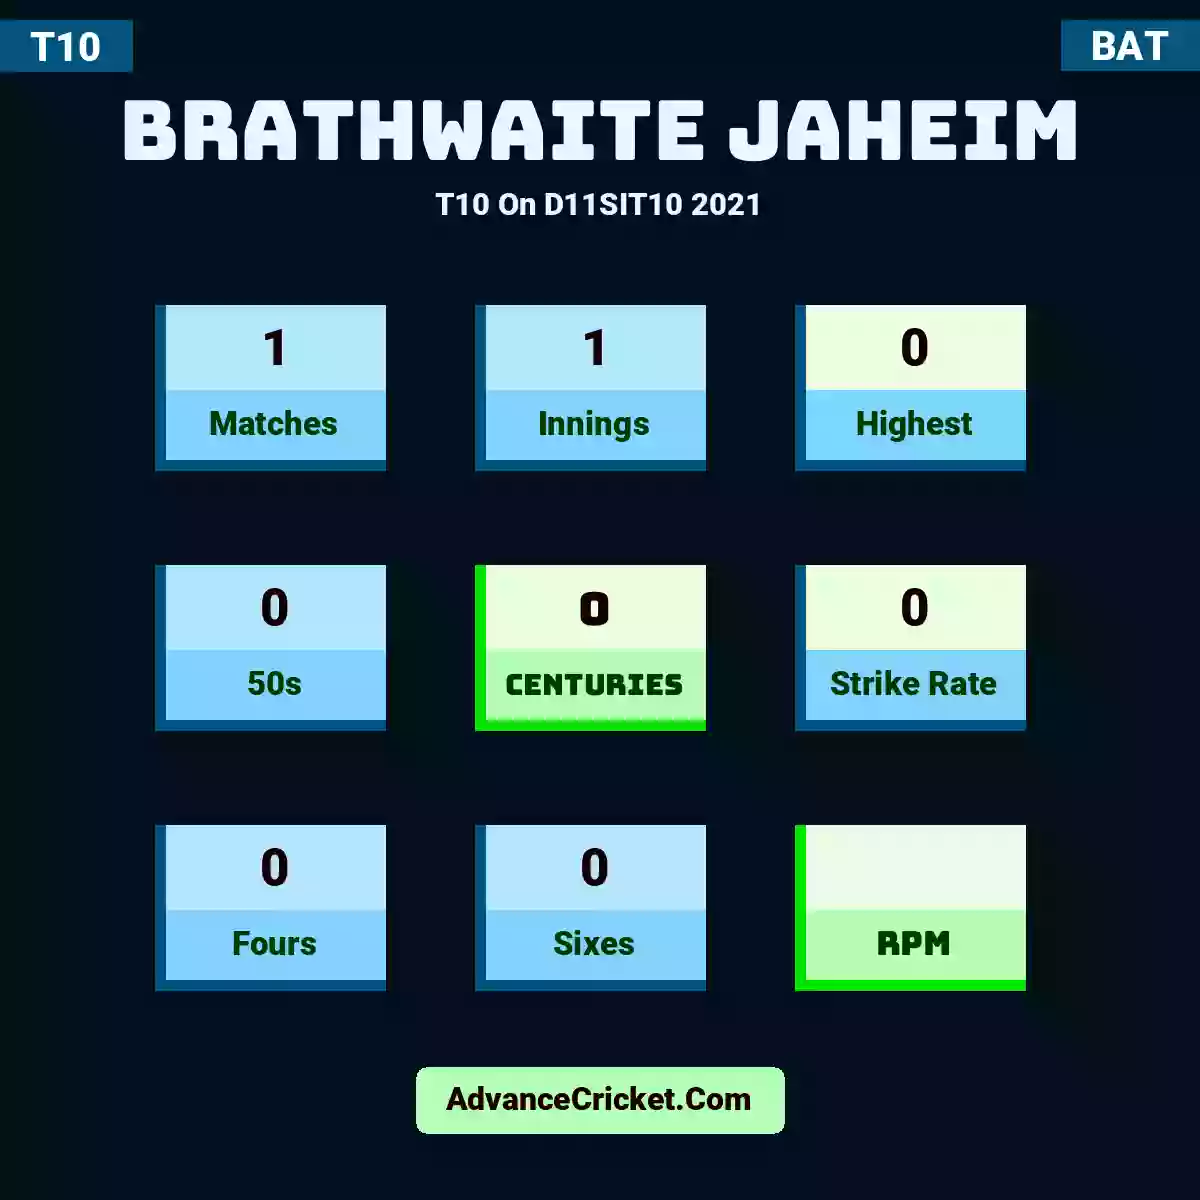 Brathwaite Jaheim T10  On D11SIT10 2021, Brathwaite Jaheim played 1 matches, scored 0 runs as highest, 0 half-centuries, and 0 centuries, with a strike rate of 0. B.Jaheim hit 0 fours and 0 sixes.